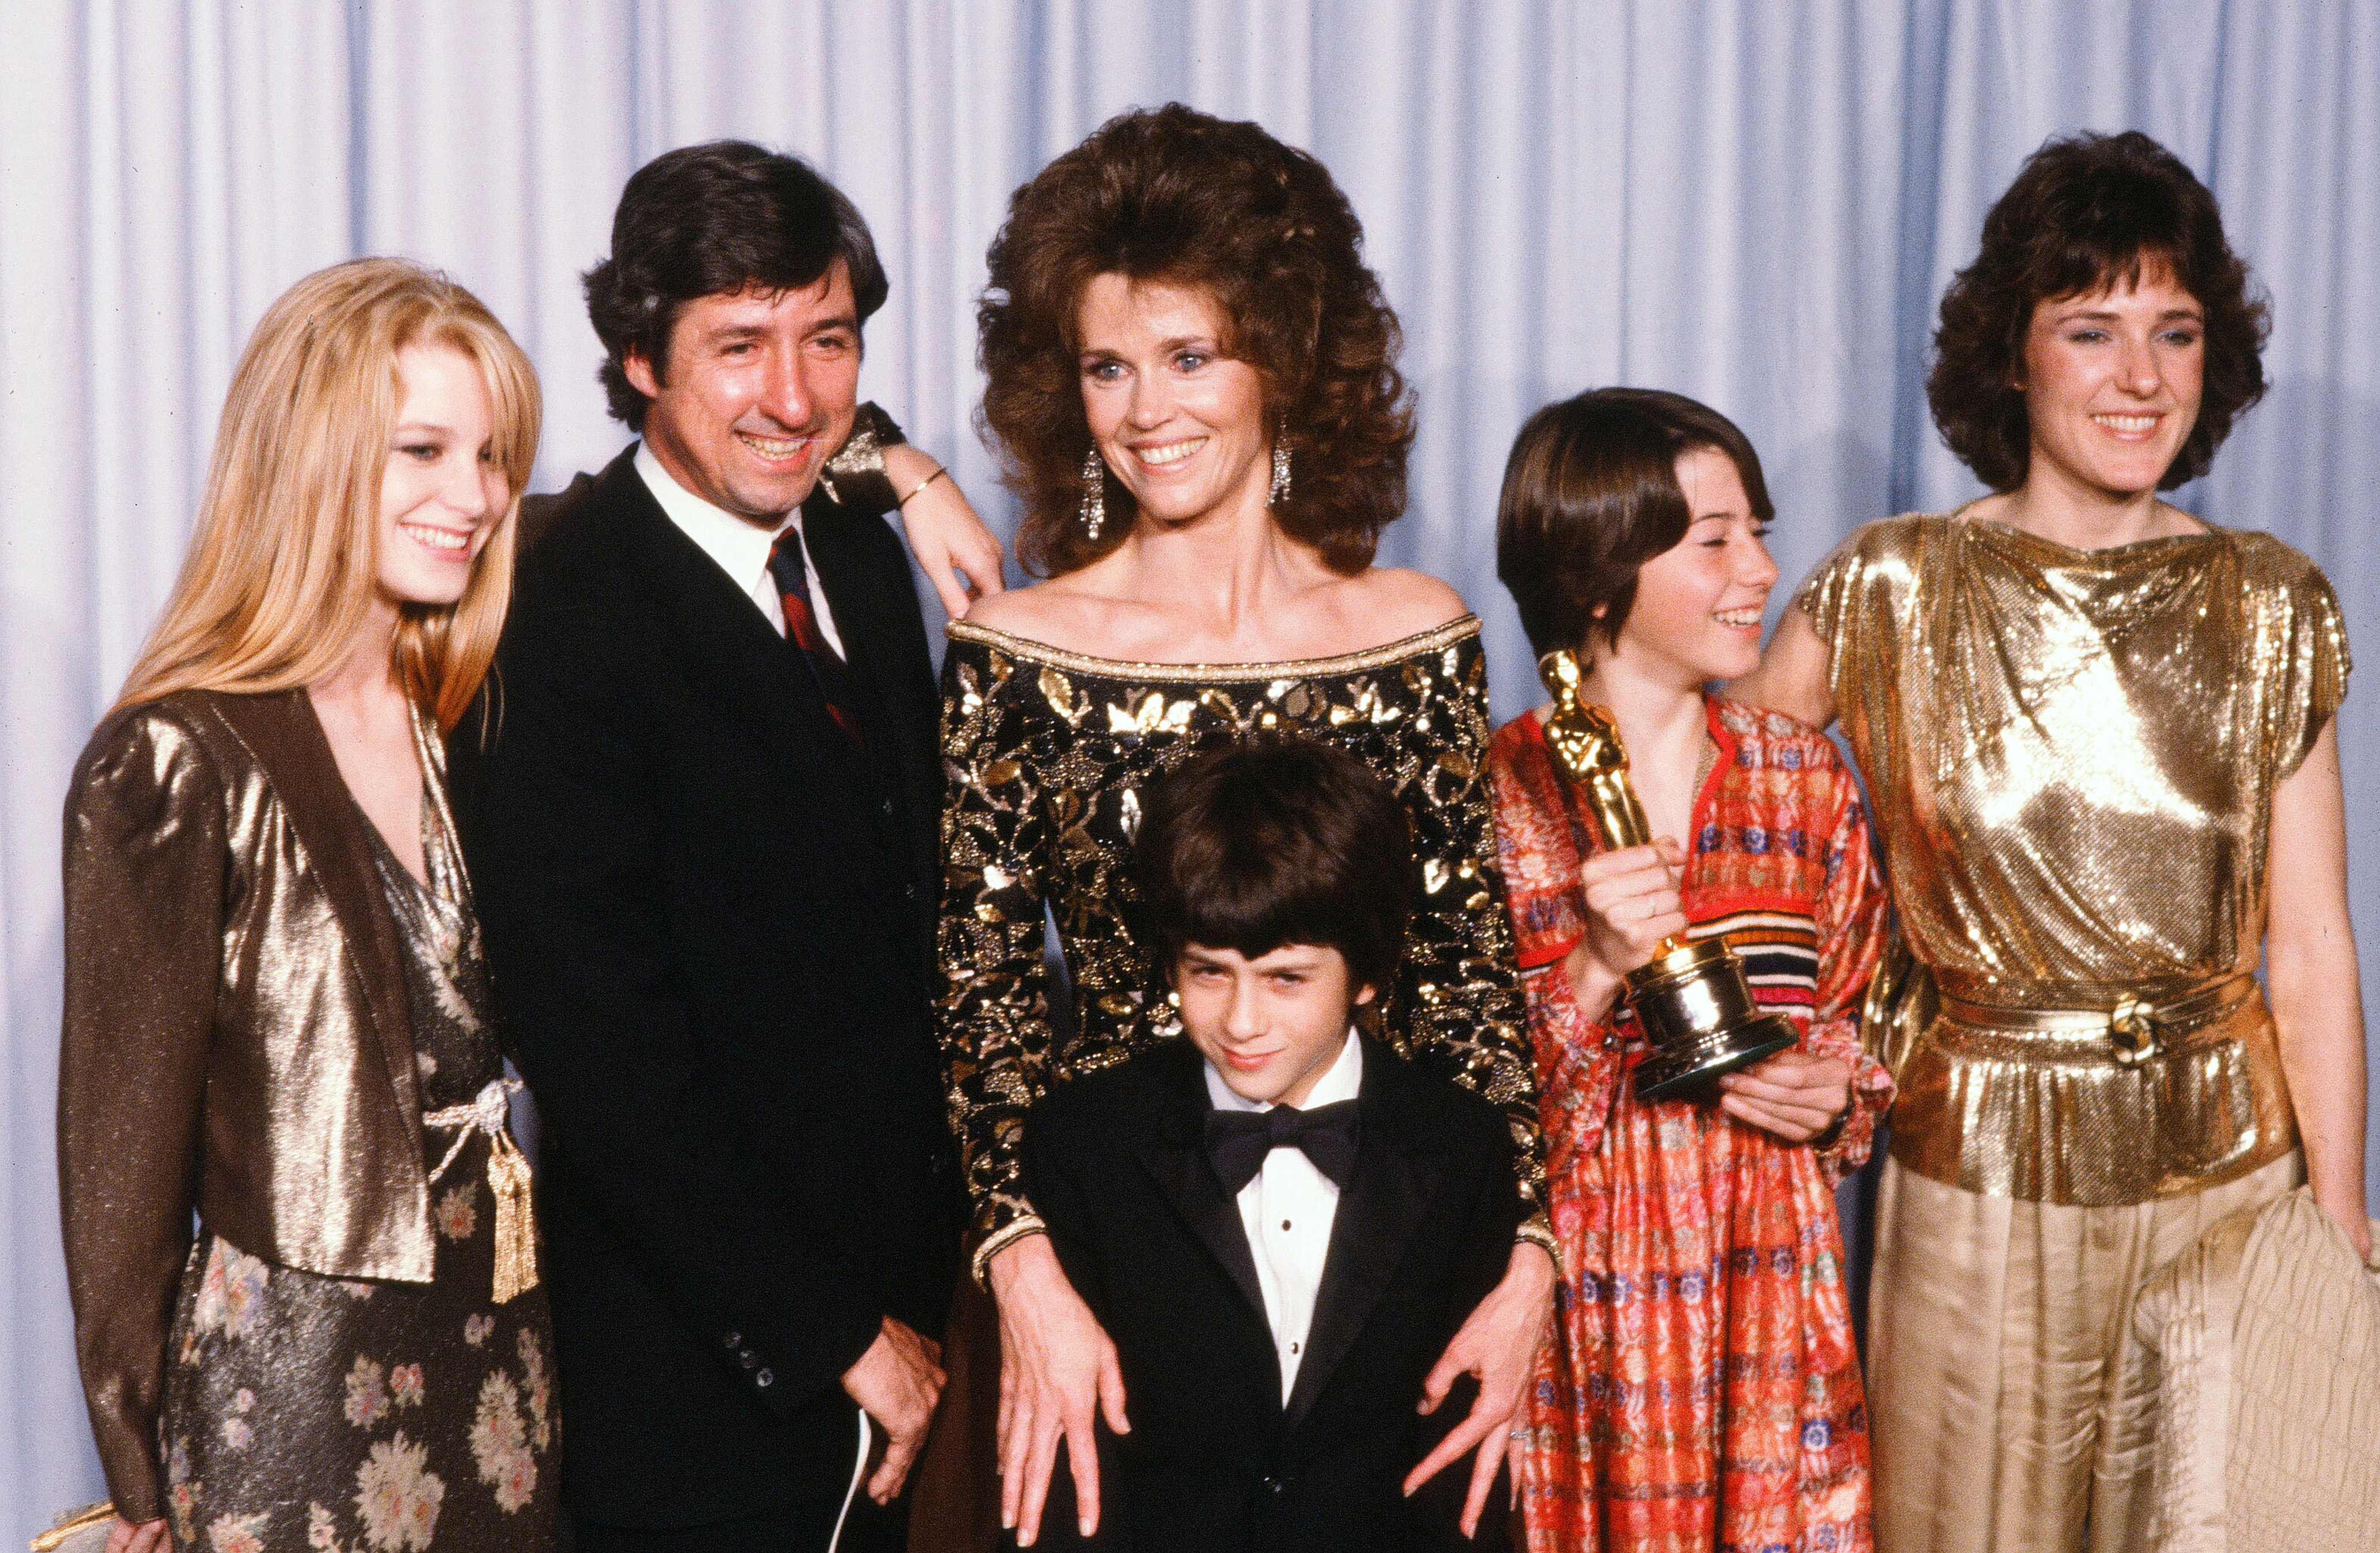 Jane Fonda avec Tom Hayden et sa famille, Bridgette Fonda, Troy Garity, Vanessa Vadim et Amy Fonda pose en coulisses après avoir accepté le prix du meilleur acteur décerné par son père Henry Fonda lors de la 54e cérémonie des Oscars au Dorothy Chandler Pavilion à Los Angeles. | Source : Getty Images